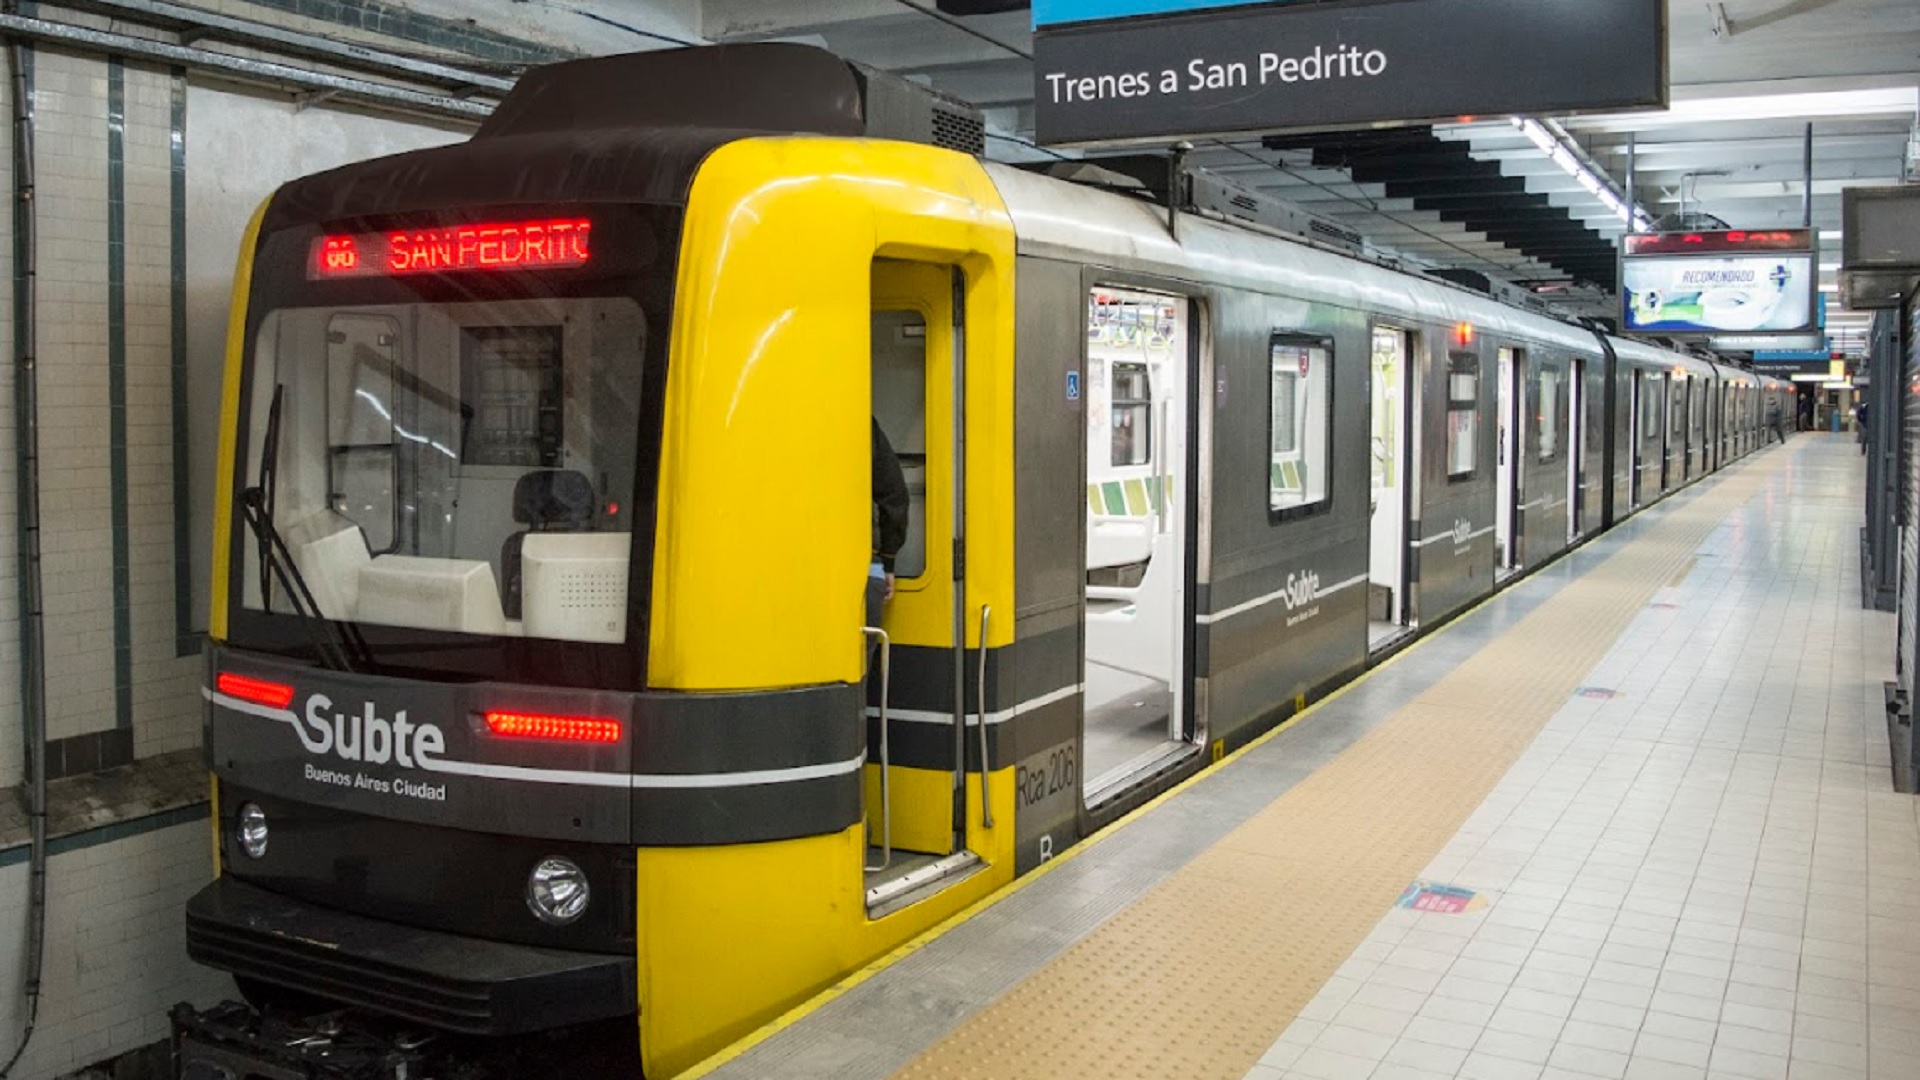 Metrodelegados anunciaron apertura de molinetes y paro en la Línea A del Subte para mañana

